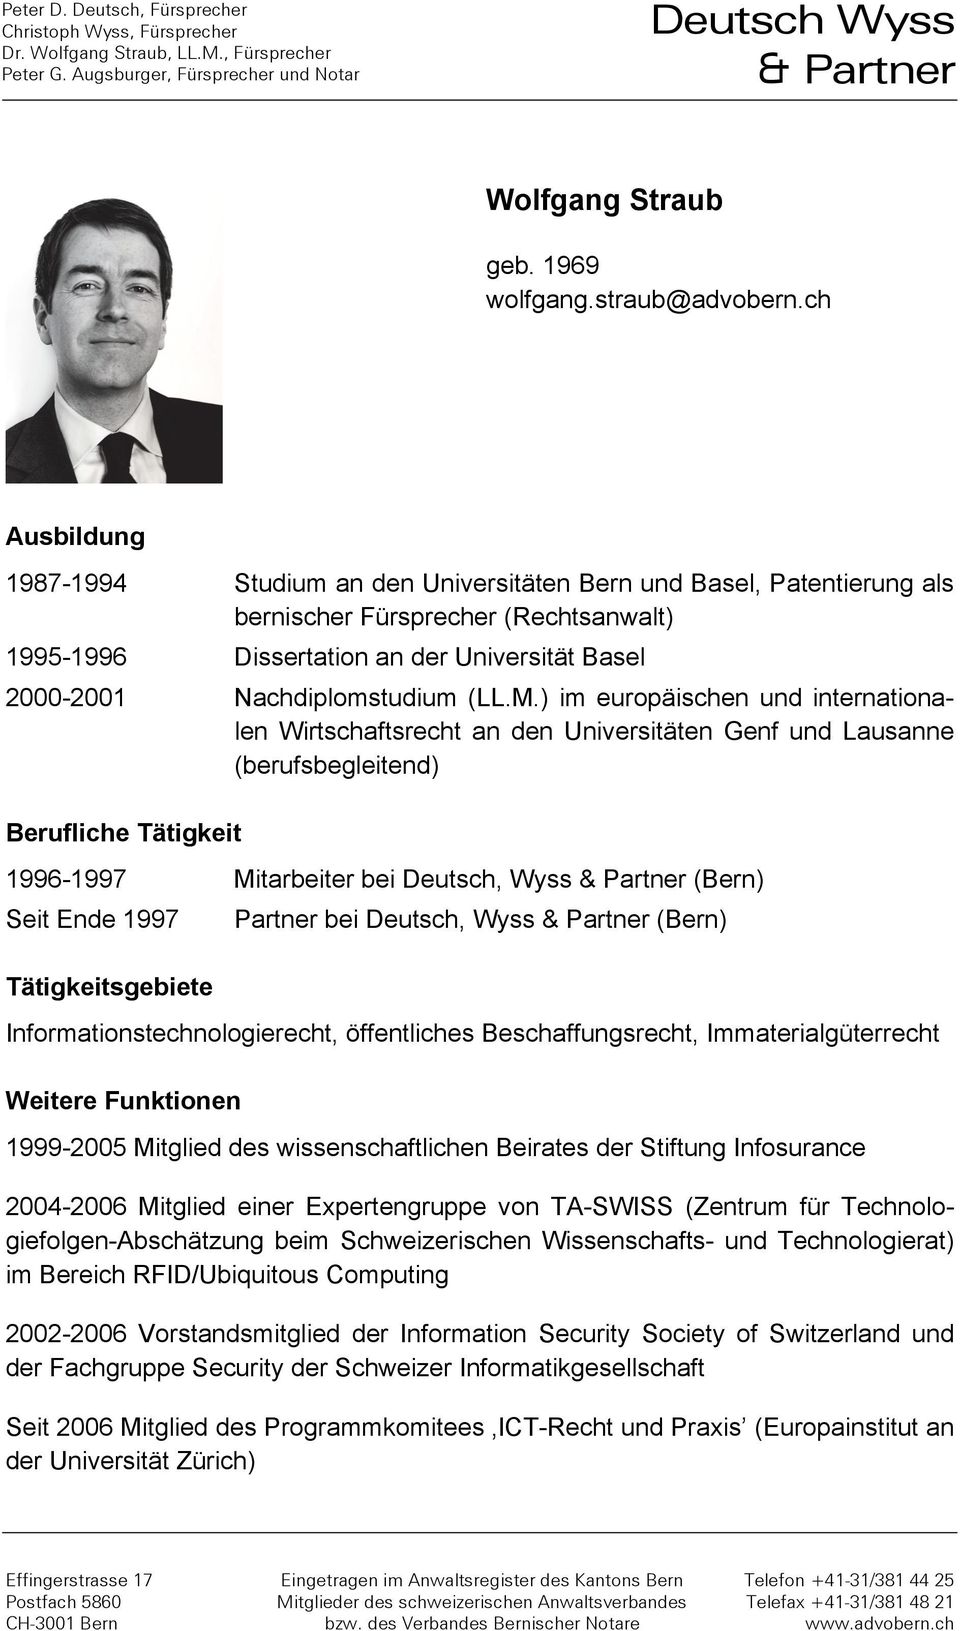 ch Ausbildung 1987-1994 Studium an den Universitäten Bern und Basel, Patentierung als bernischer Fürsprecher (Rechtsanwalt) 1995-1996 Dissertation an der Universität Basel 2000-2001 Nachdiplomstudium